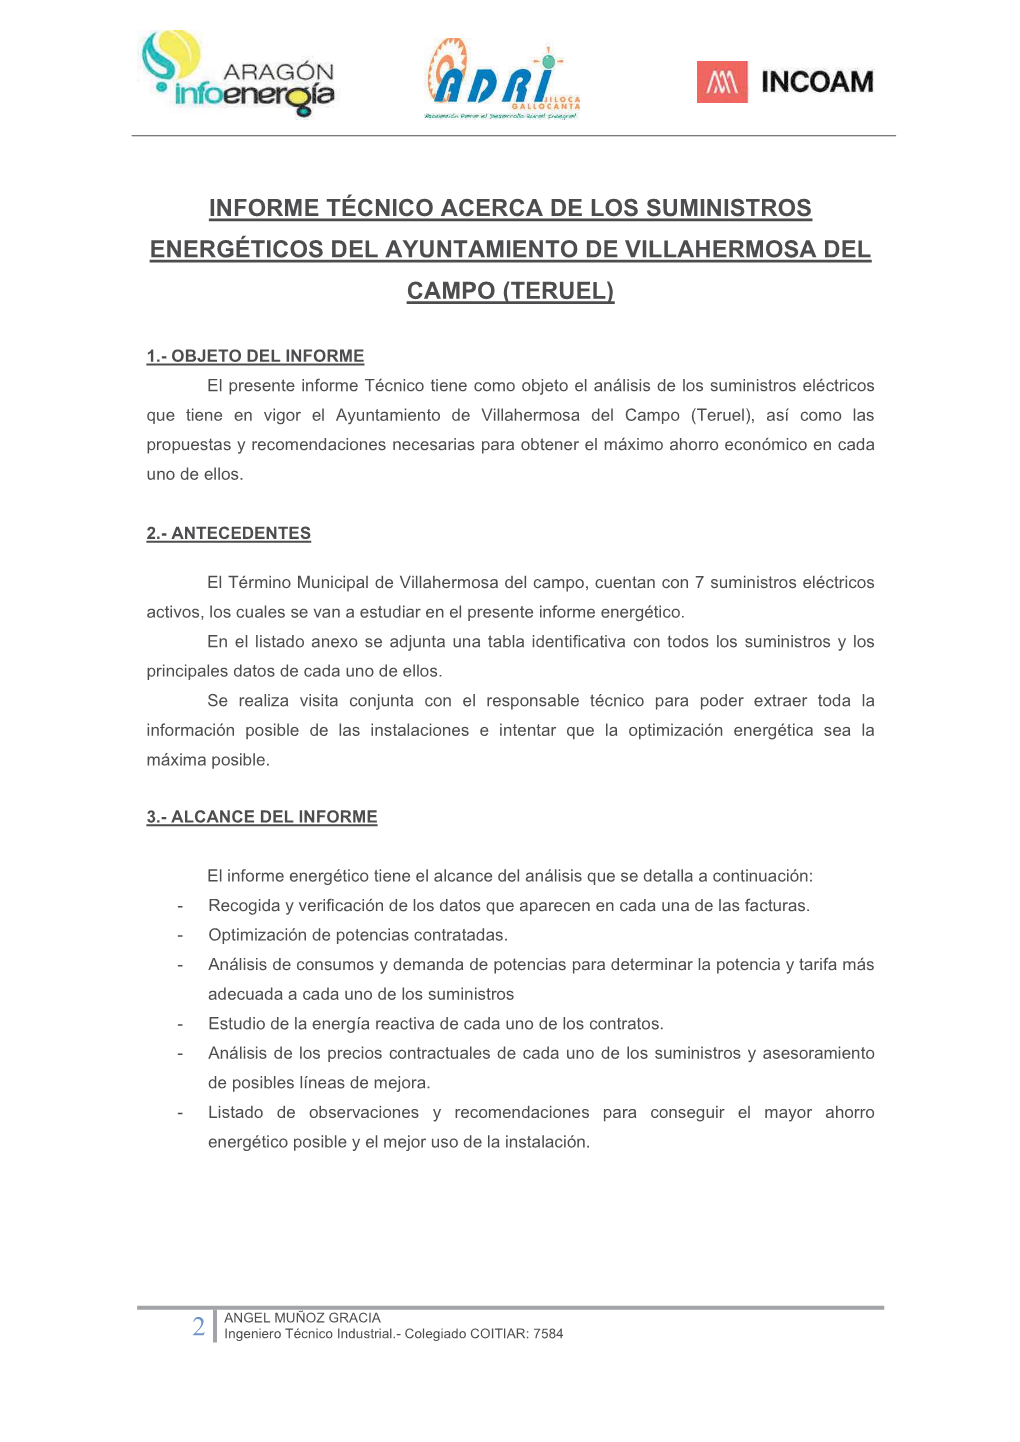 Informe Técnico Acerca De Los Suministros Energéticos Del Ayuntamiento De Villahermosa Del Campo (Teruel)